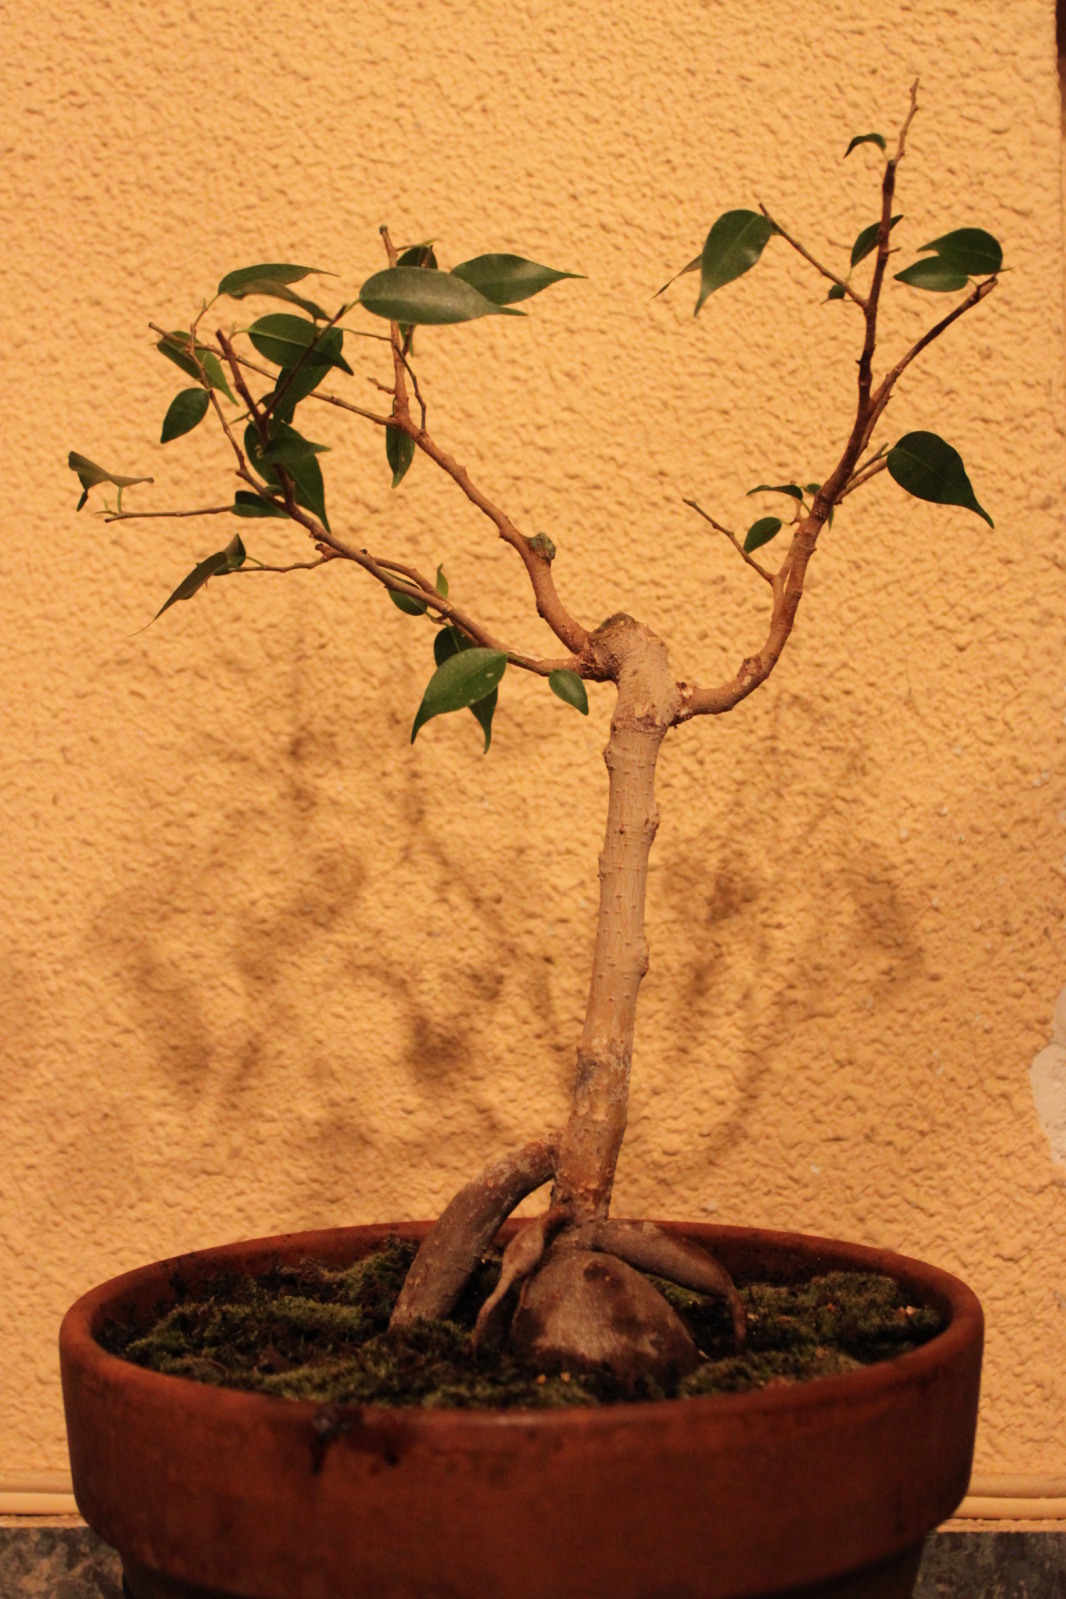 comenzando con el mundo de los bonsais 2jfwv84